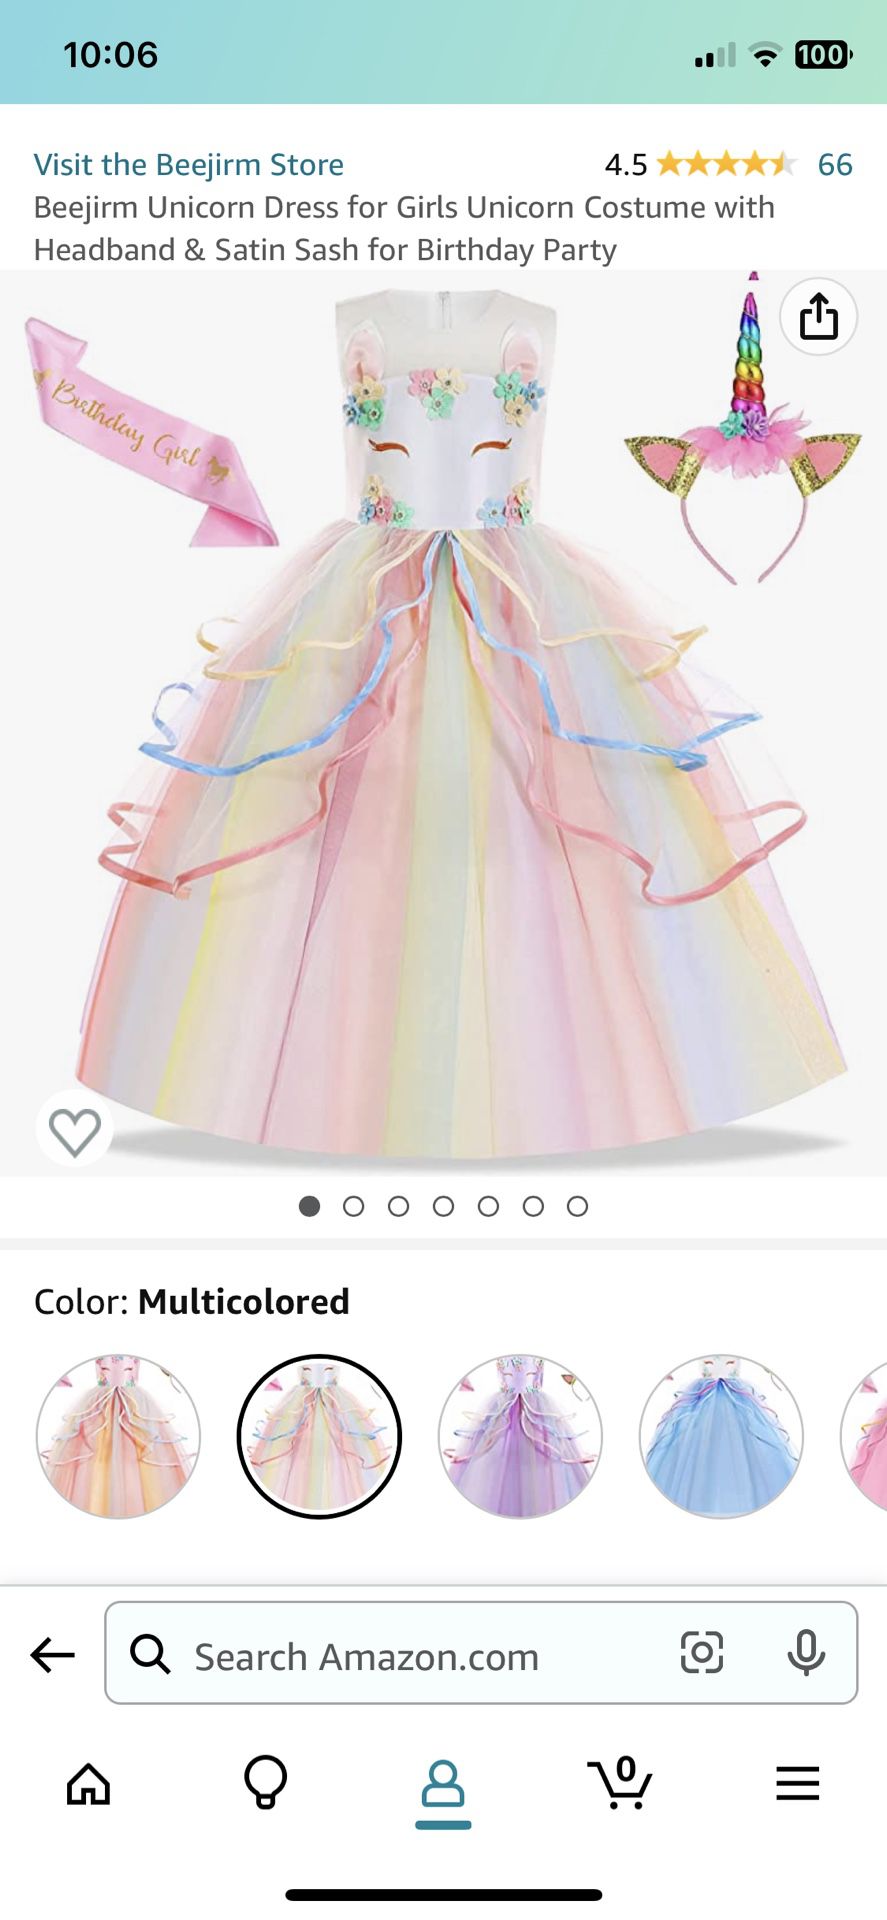 3 Piece Birthday Unicorn Dress Size 3 Yrs Old New 